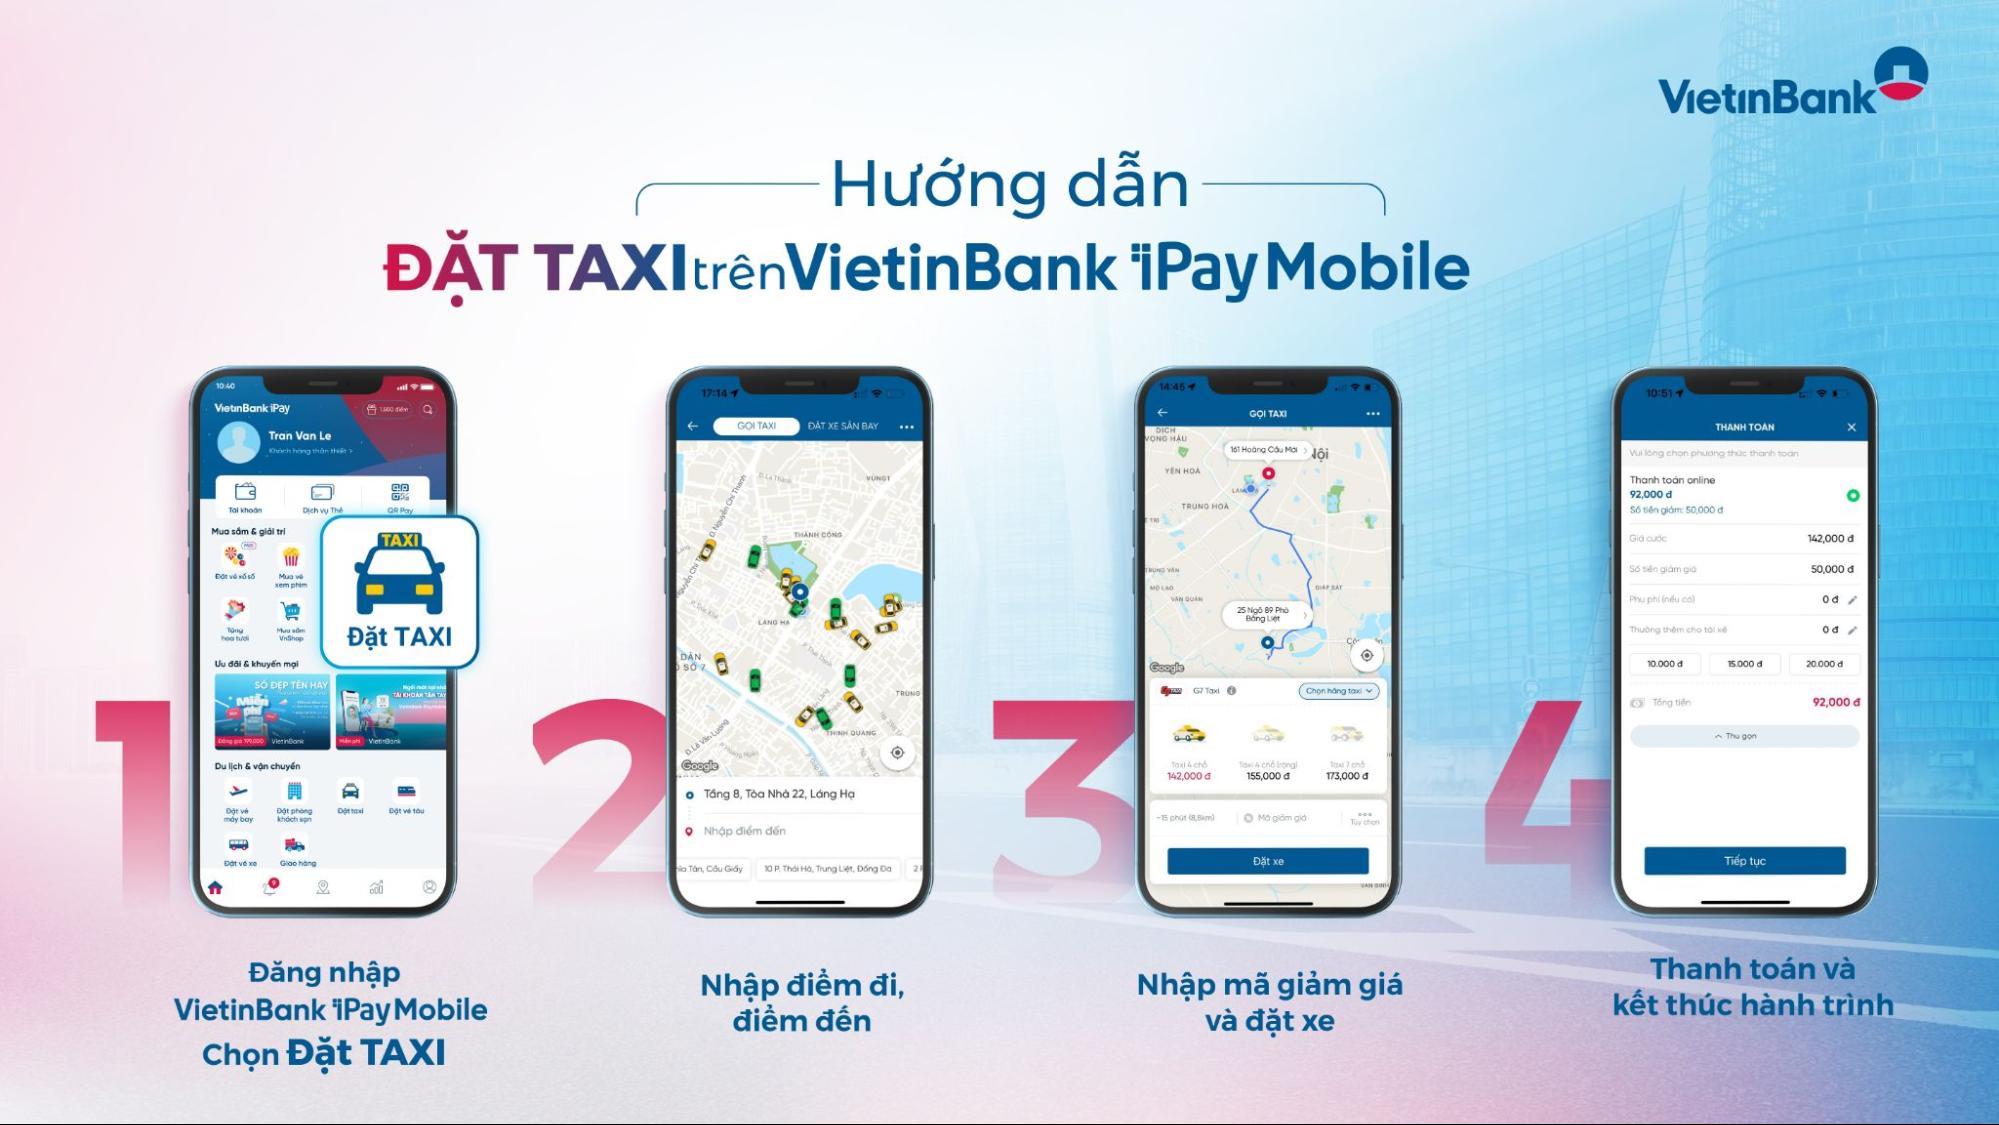 Hướng dẫn đặt taxi Hà Nội Hưng Yên